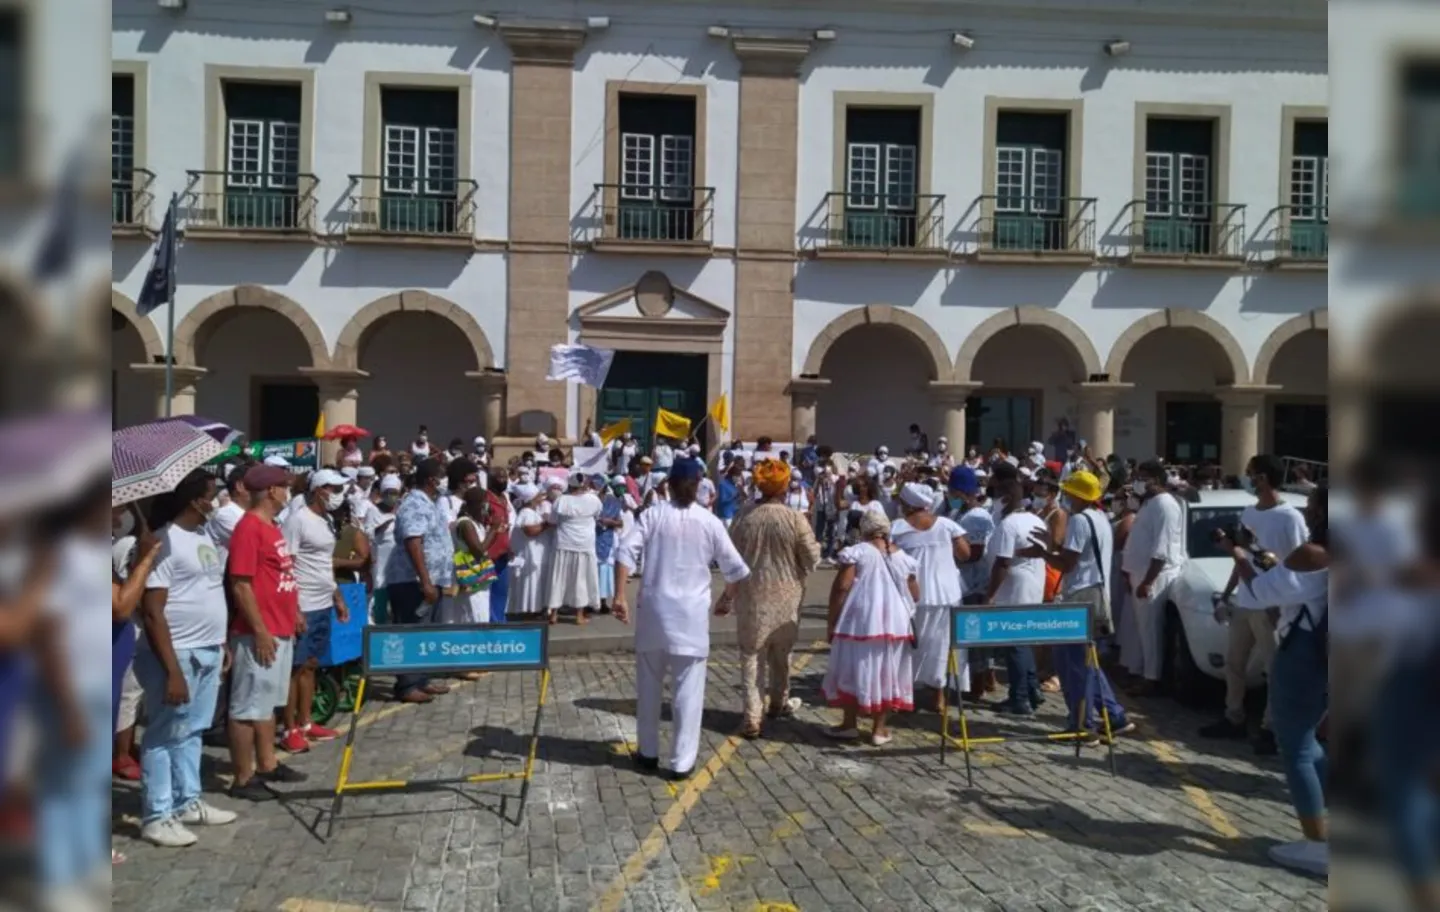 Contra o projeto, grupo realizou ebó coletivo em frente à Câmara Municipal